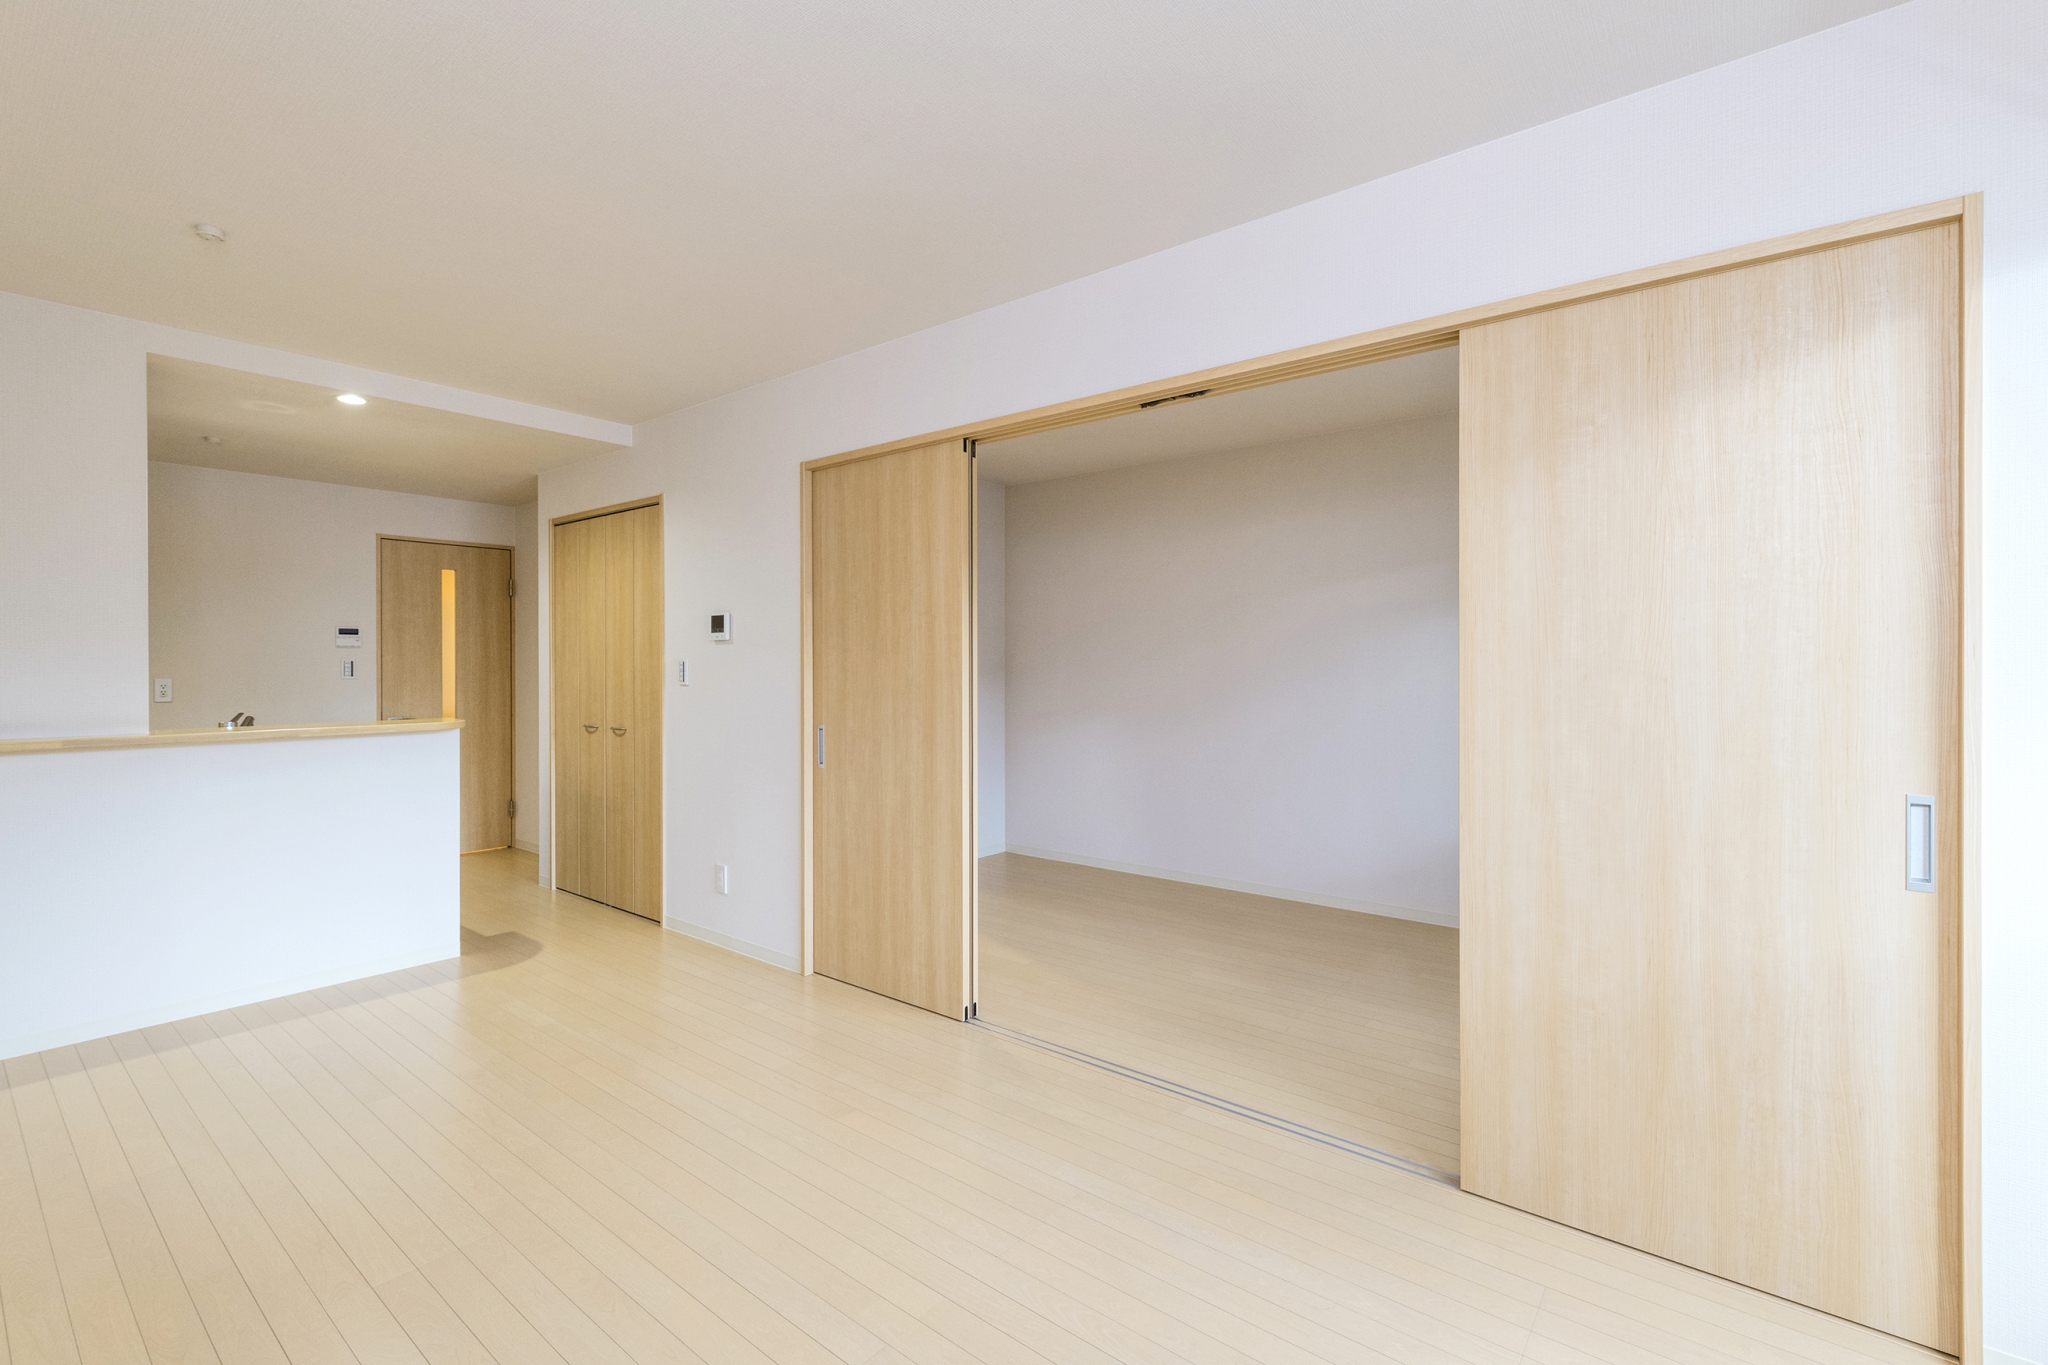 名古屋市中村区の木造3階建賃貸アパートのナチュラルテイストなLDK+洋室